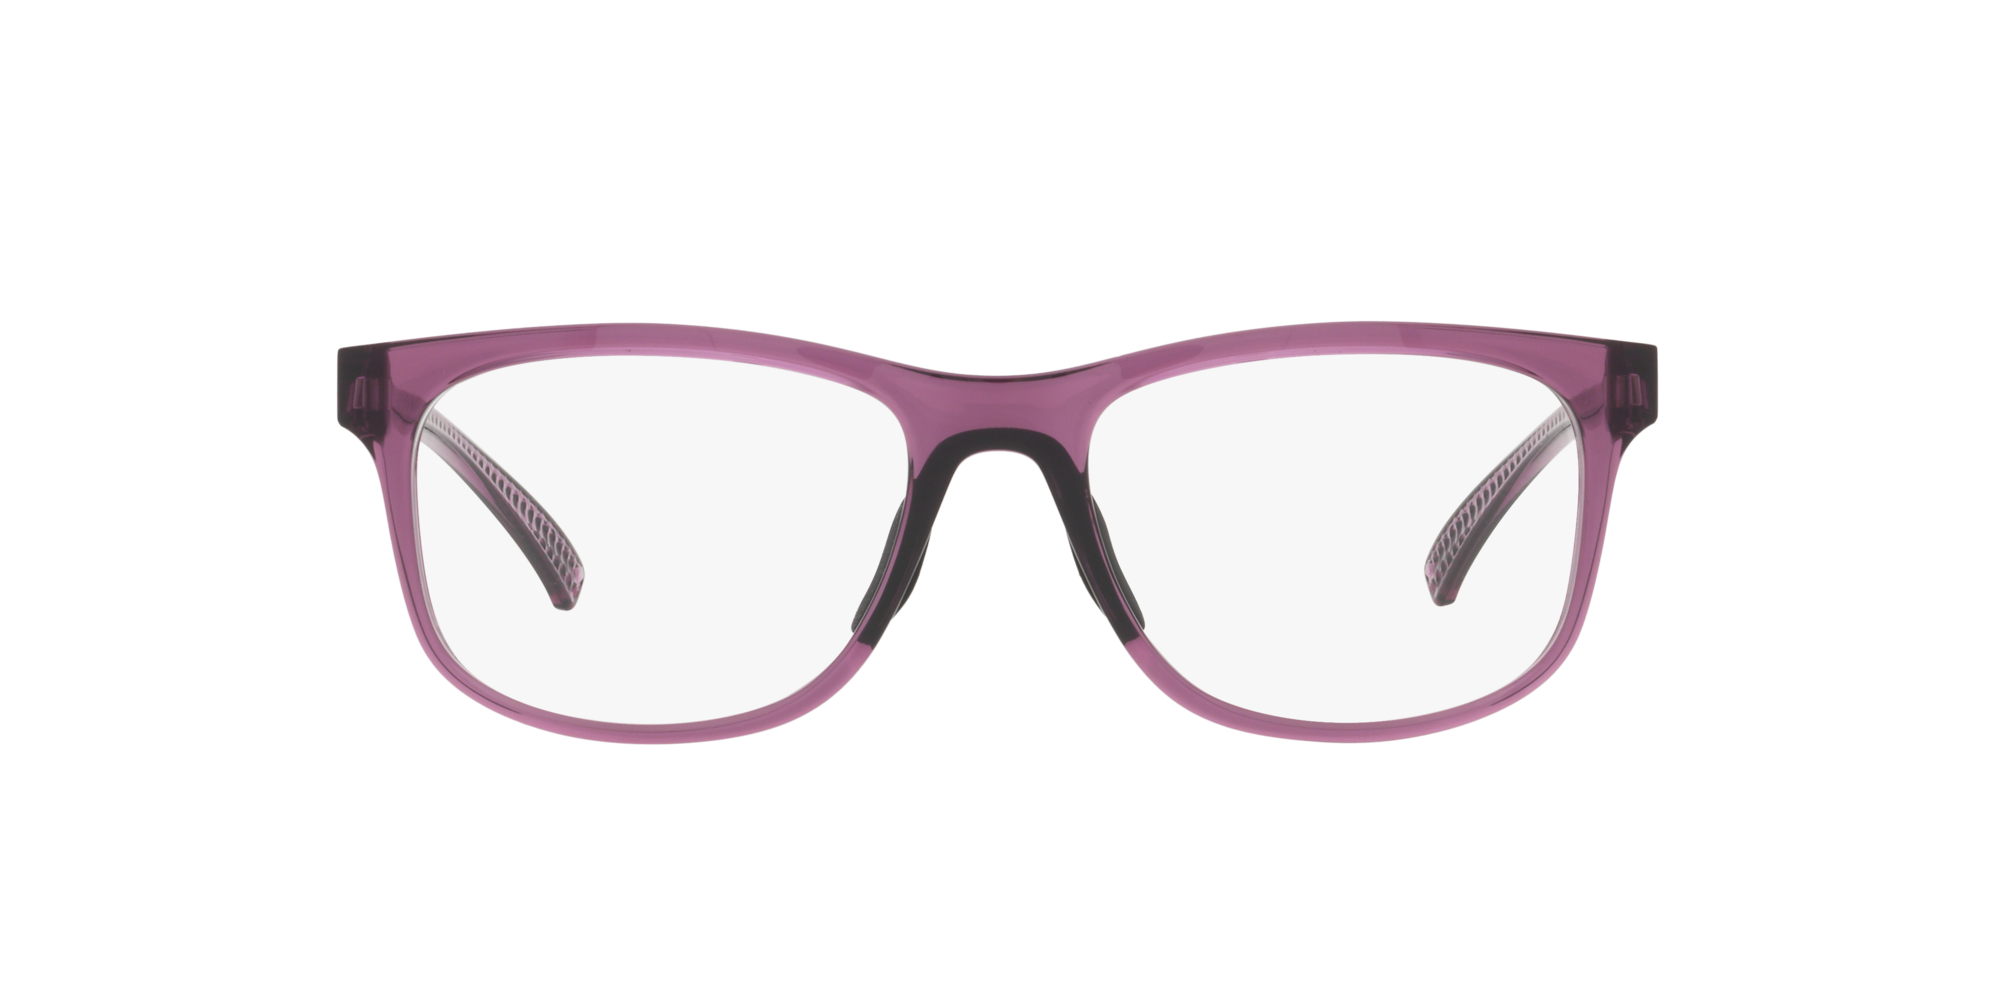 Das Bild zeigt die Korrektionsbrille OX8175 817507 von der Marke Oakley  in tansparent indigo.